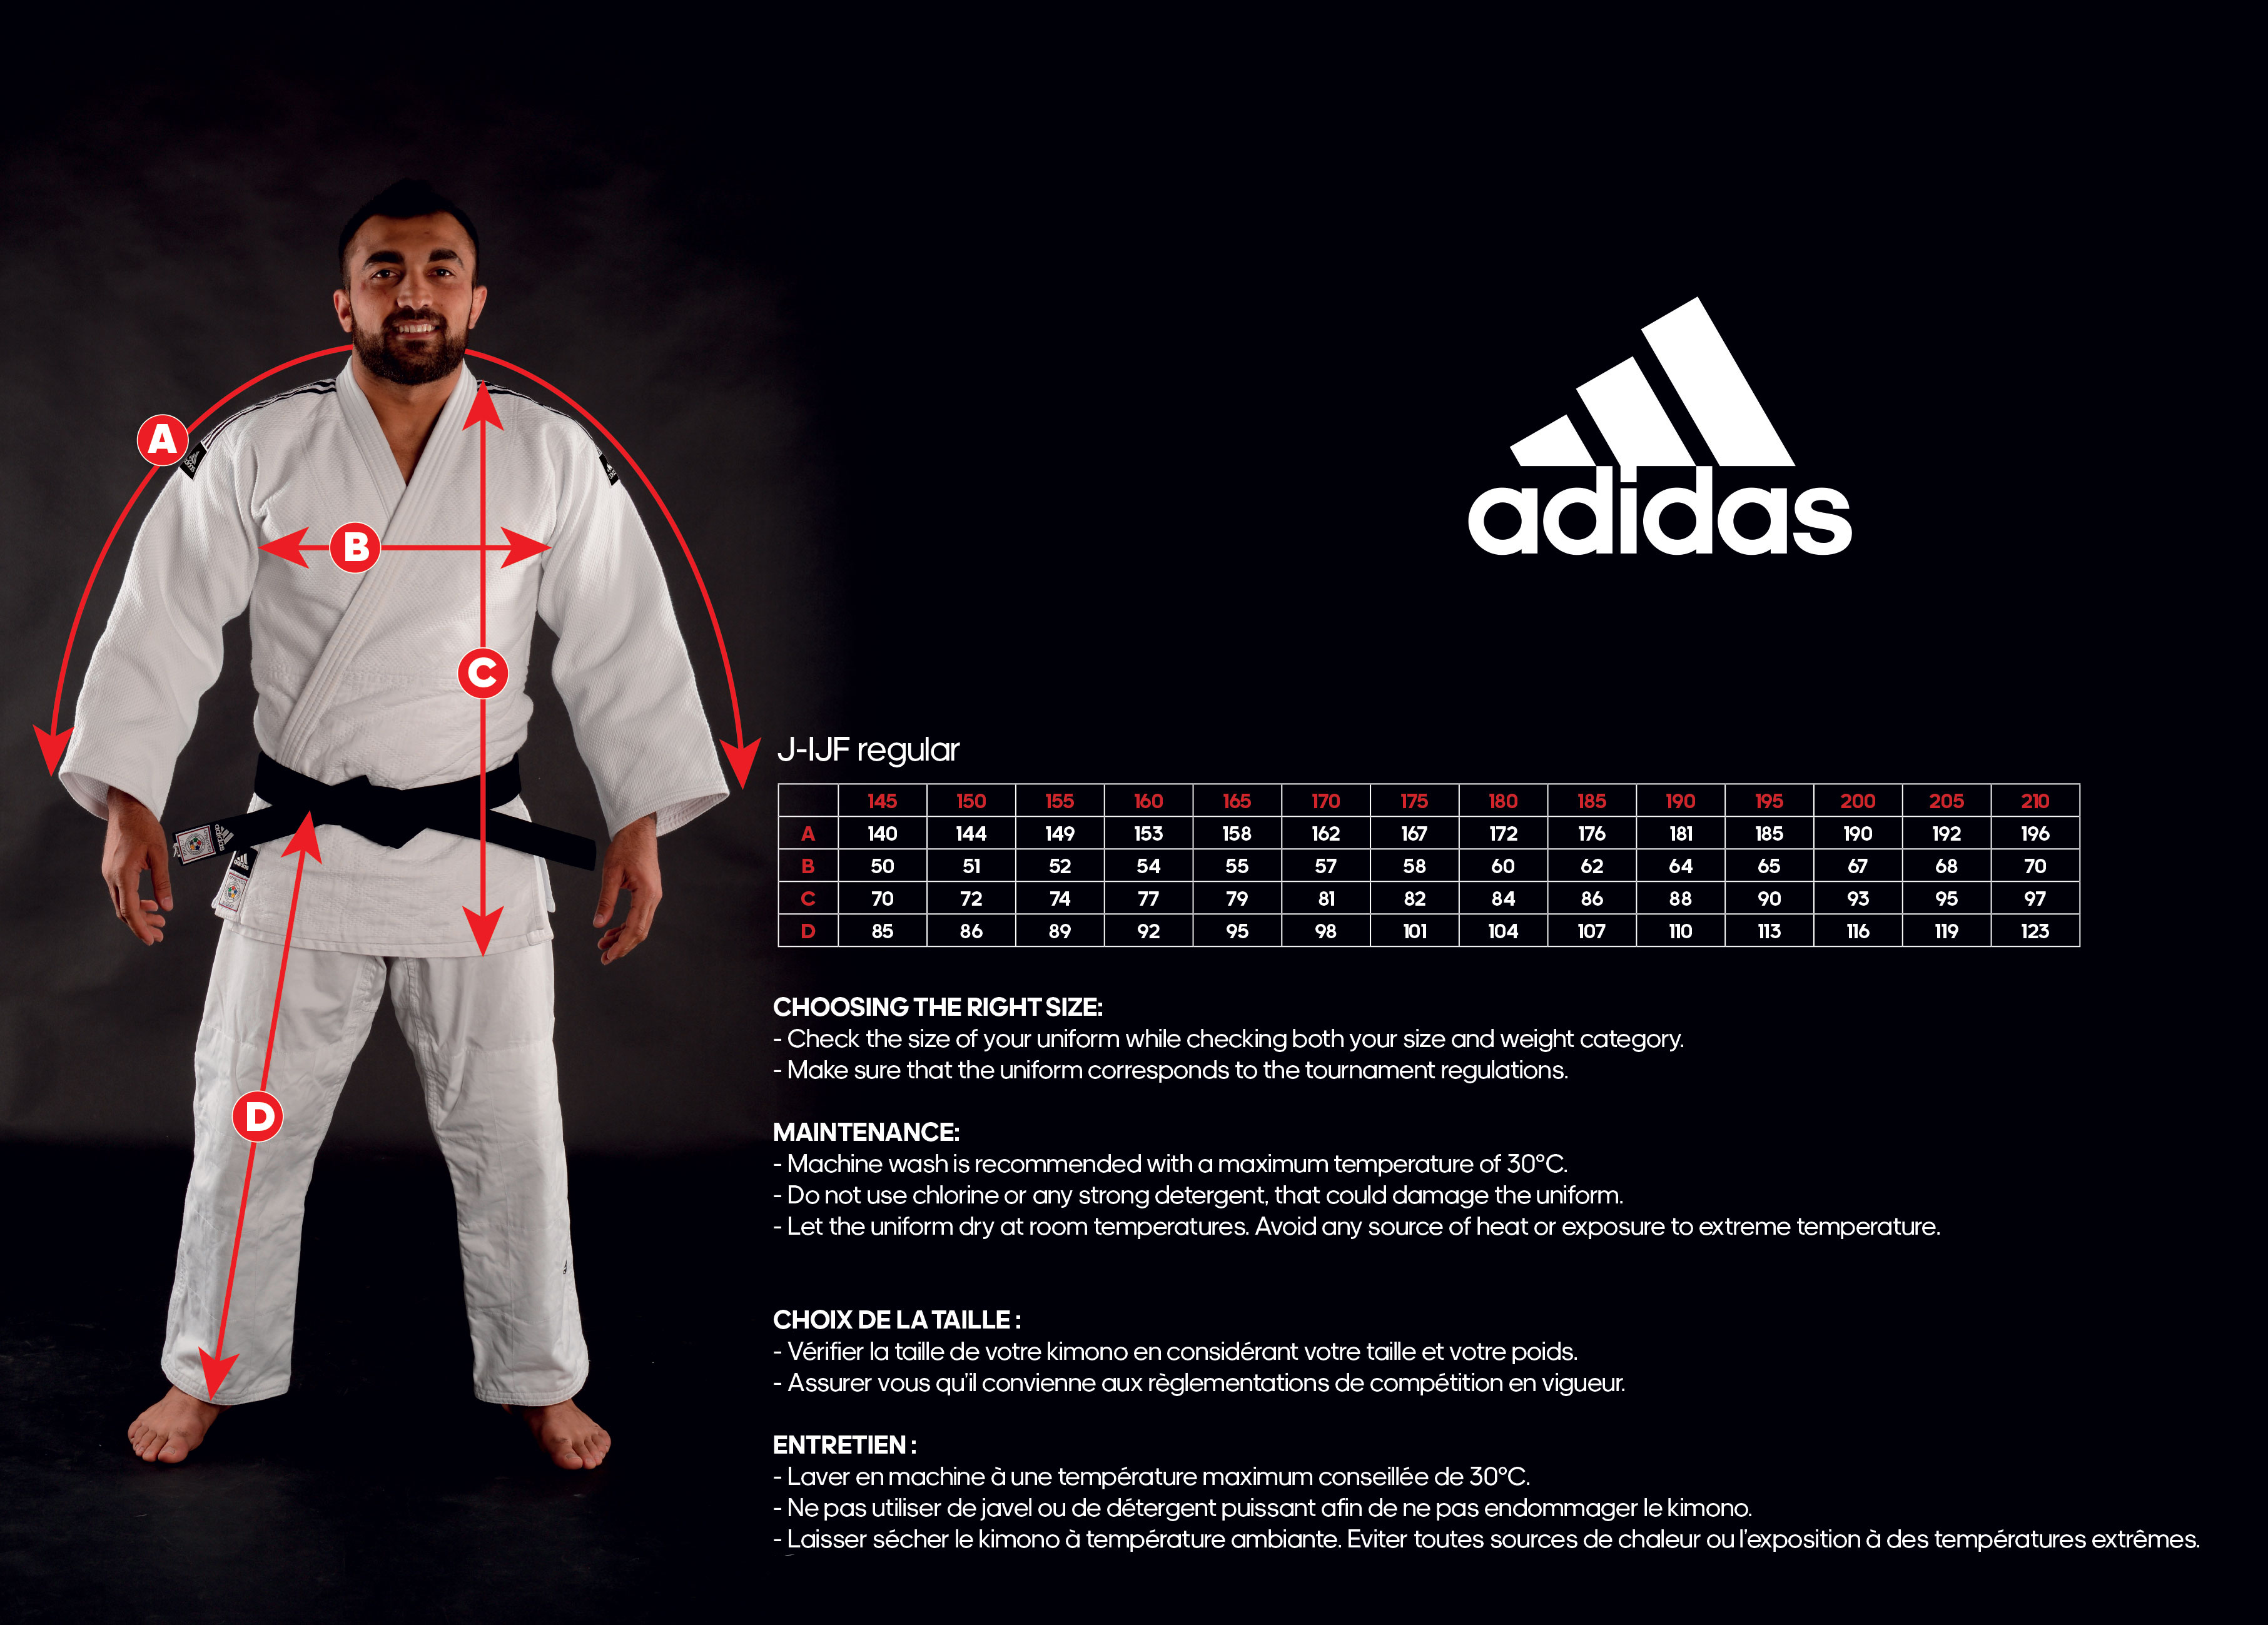 Дзюдо таблицы. Judogi approved кимоно adidas Champion 2. Кимоно adidas IJF. Adidas Champion 2 кимоно IJF. Кимоно "adidas" Champion 3 IJF.